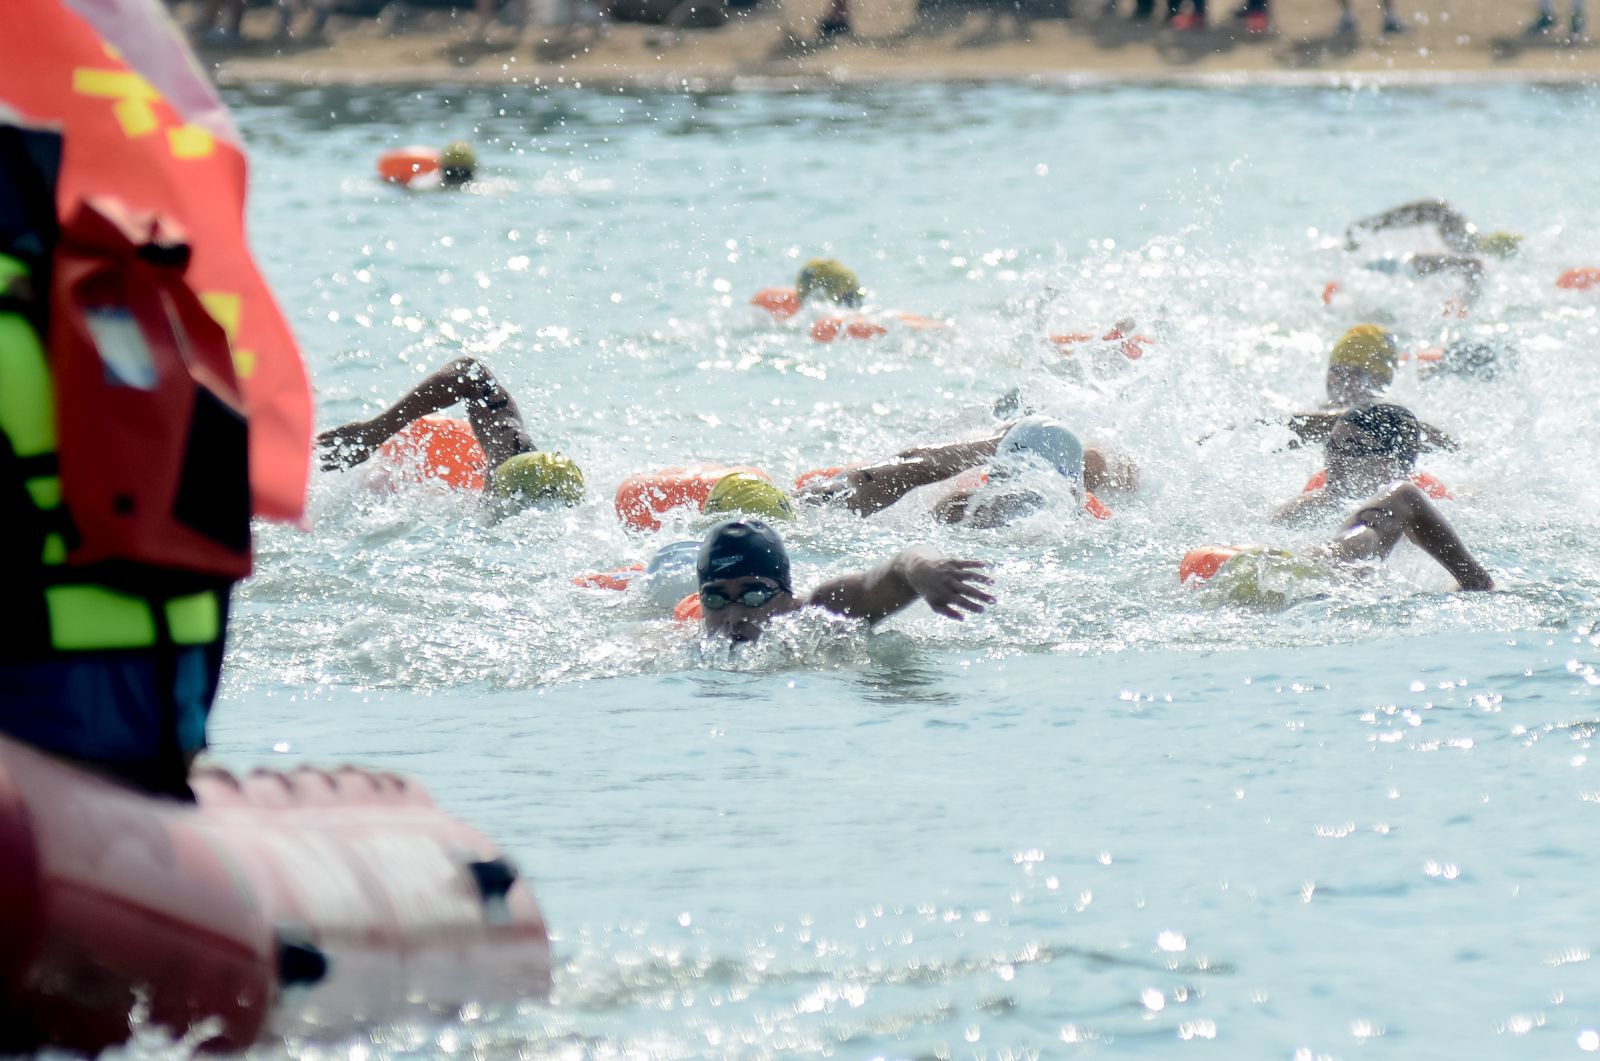 一年一度金廈泳渡為兩岸重要體育交流賽事。圖/金門縣政府提供